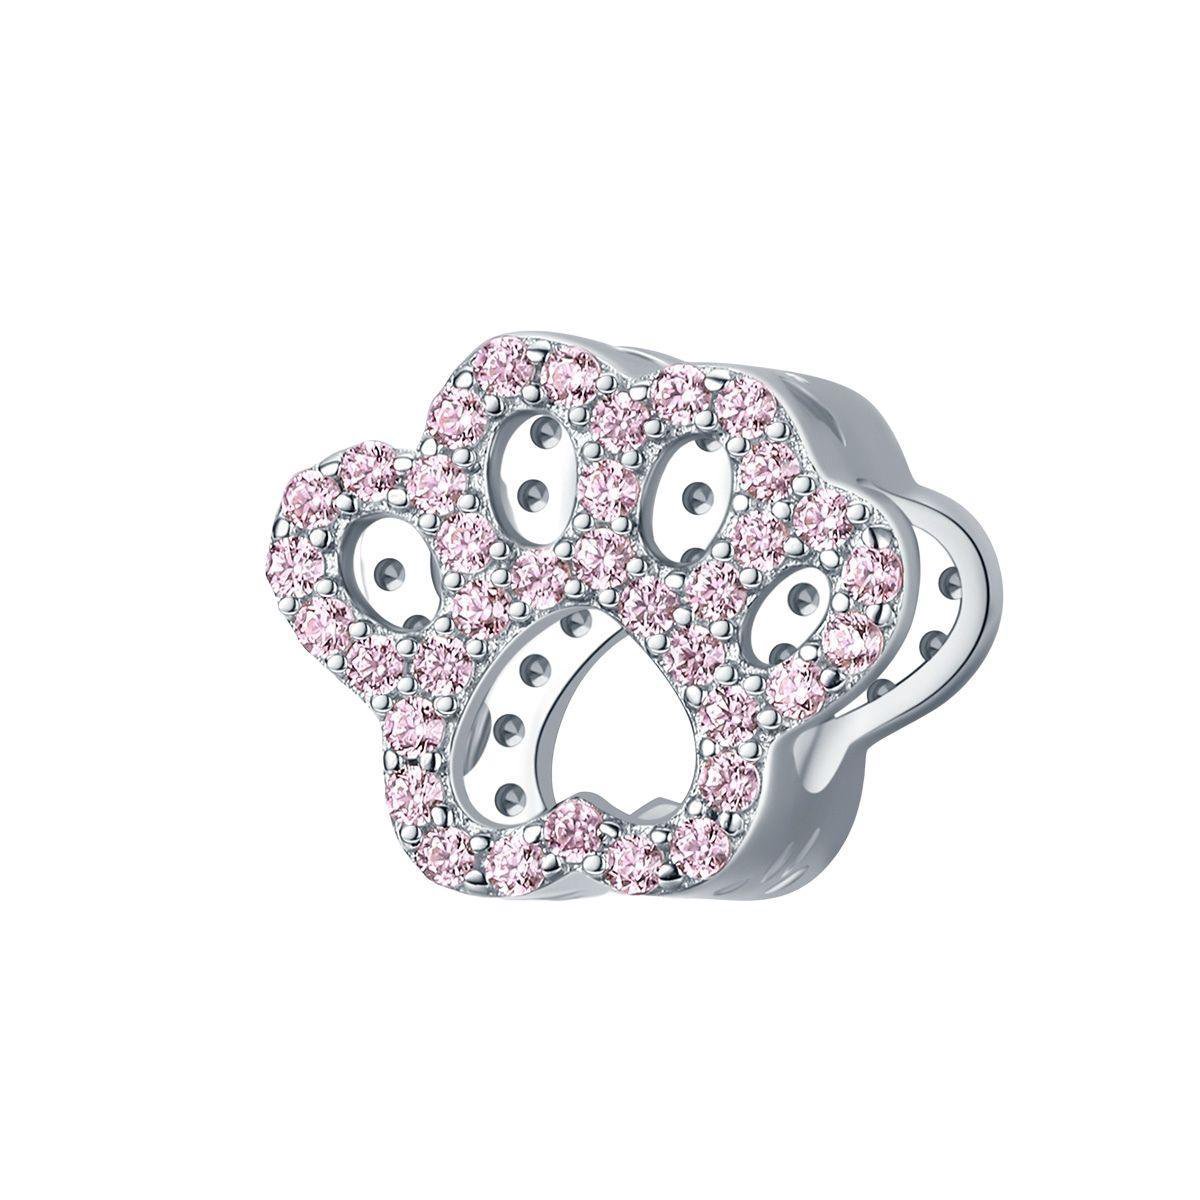 Poot hond beer roze zirkonia bedel | dog paw pink zirconia bead | Zilverana | geschikt voor alle bekende merken | 925 zilver | moederdag